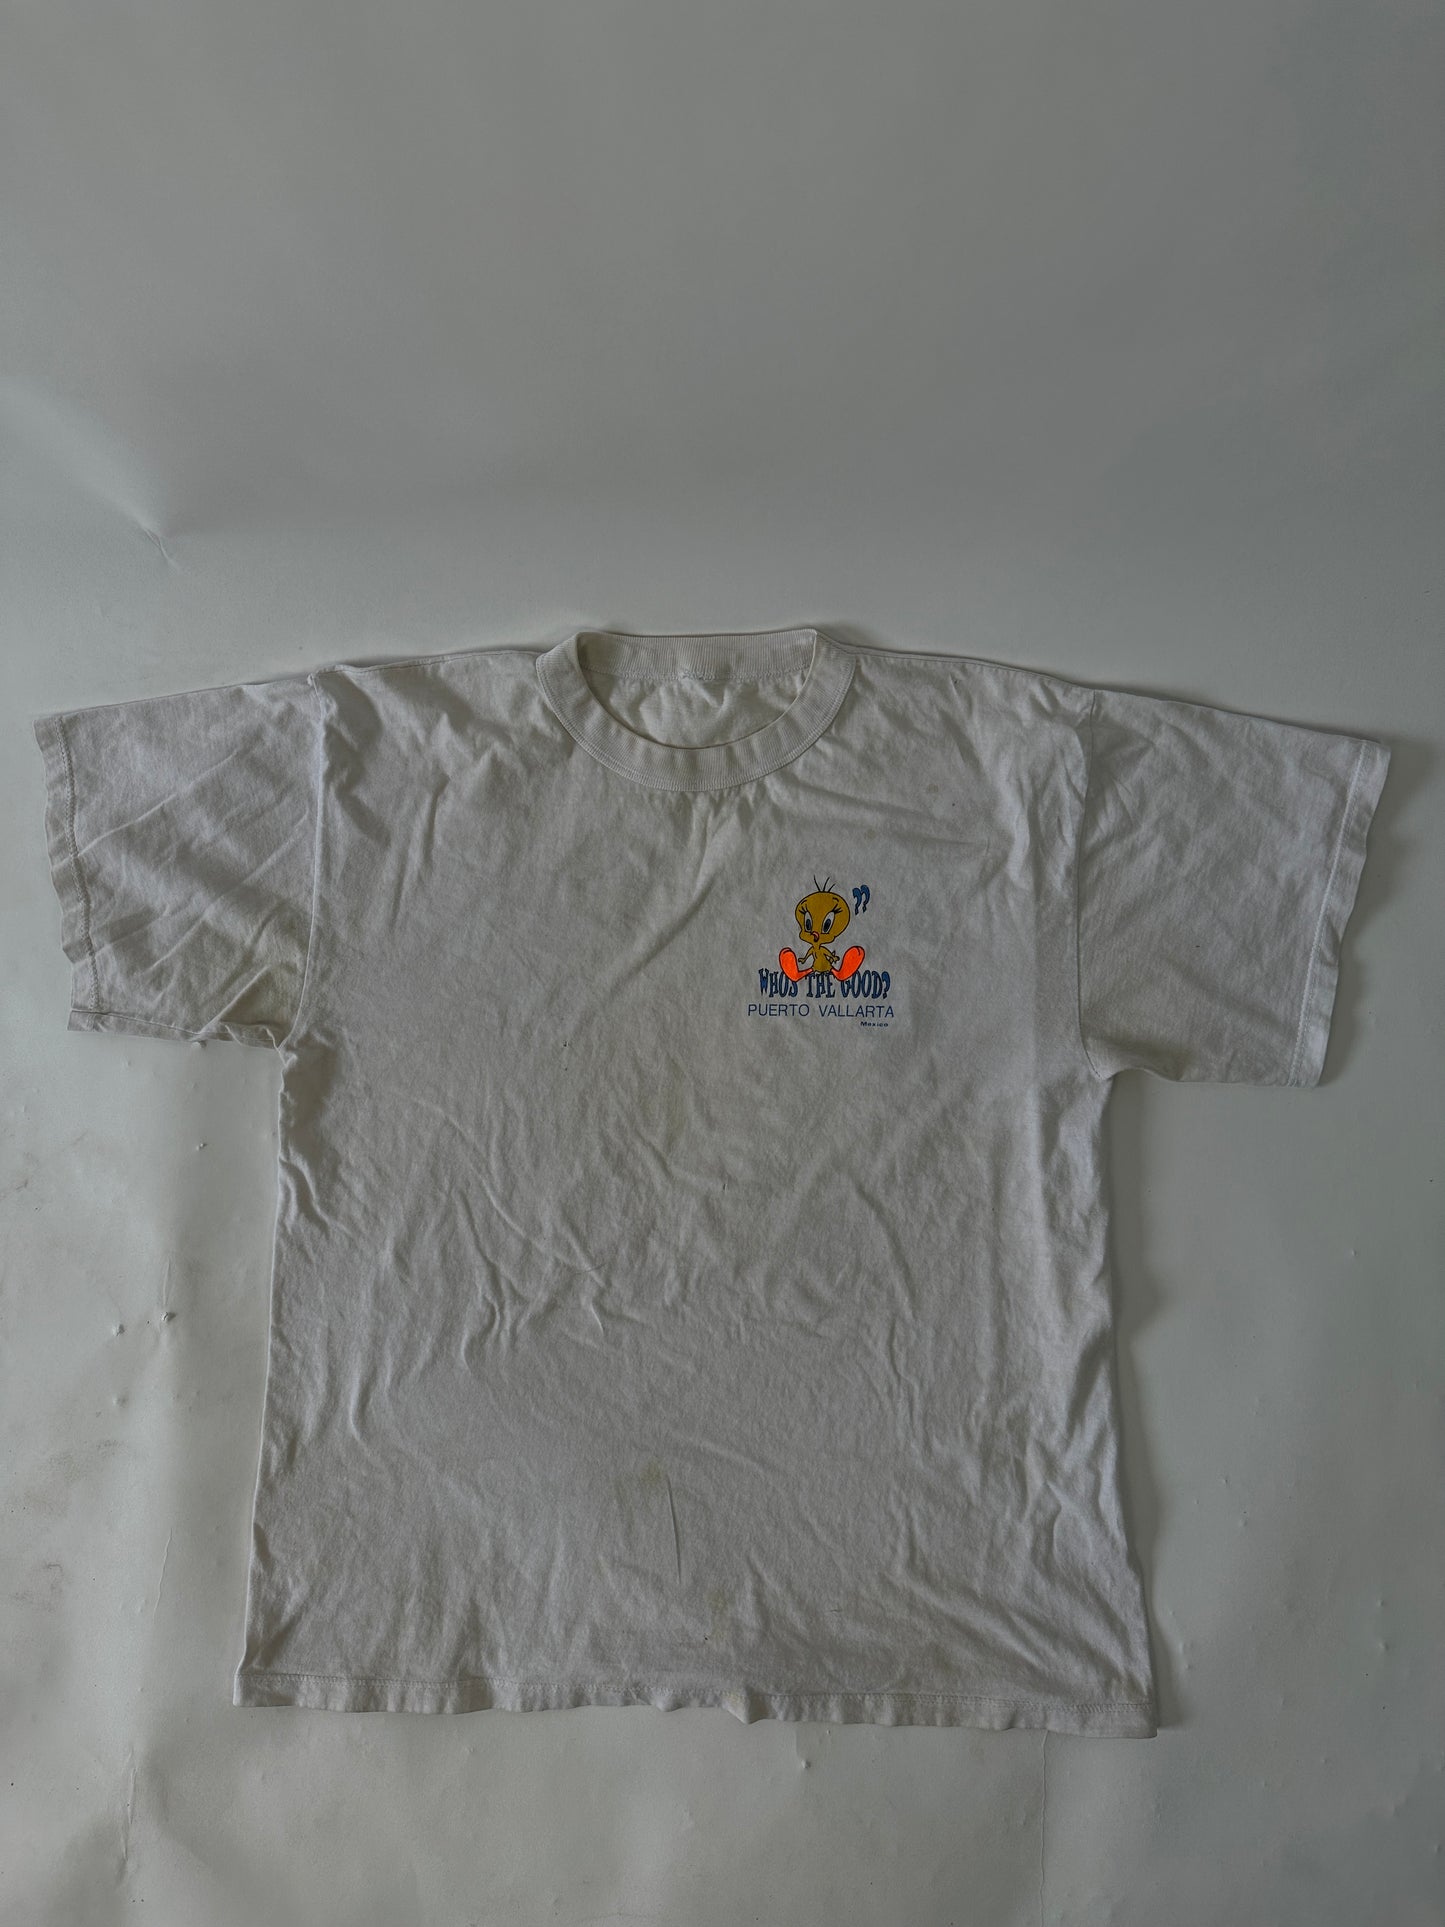 Piolin Puerto Vallarta Vintage T-Shirt - L